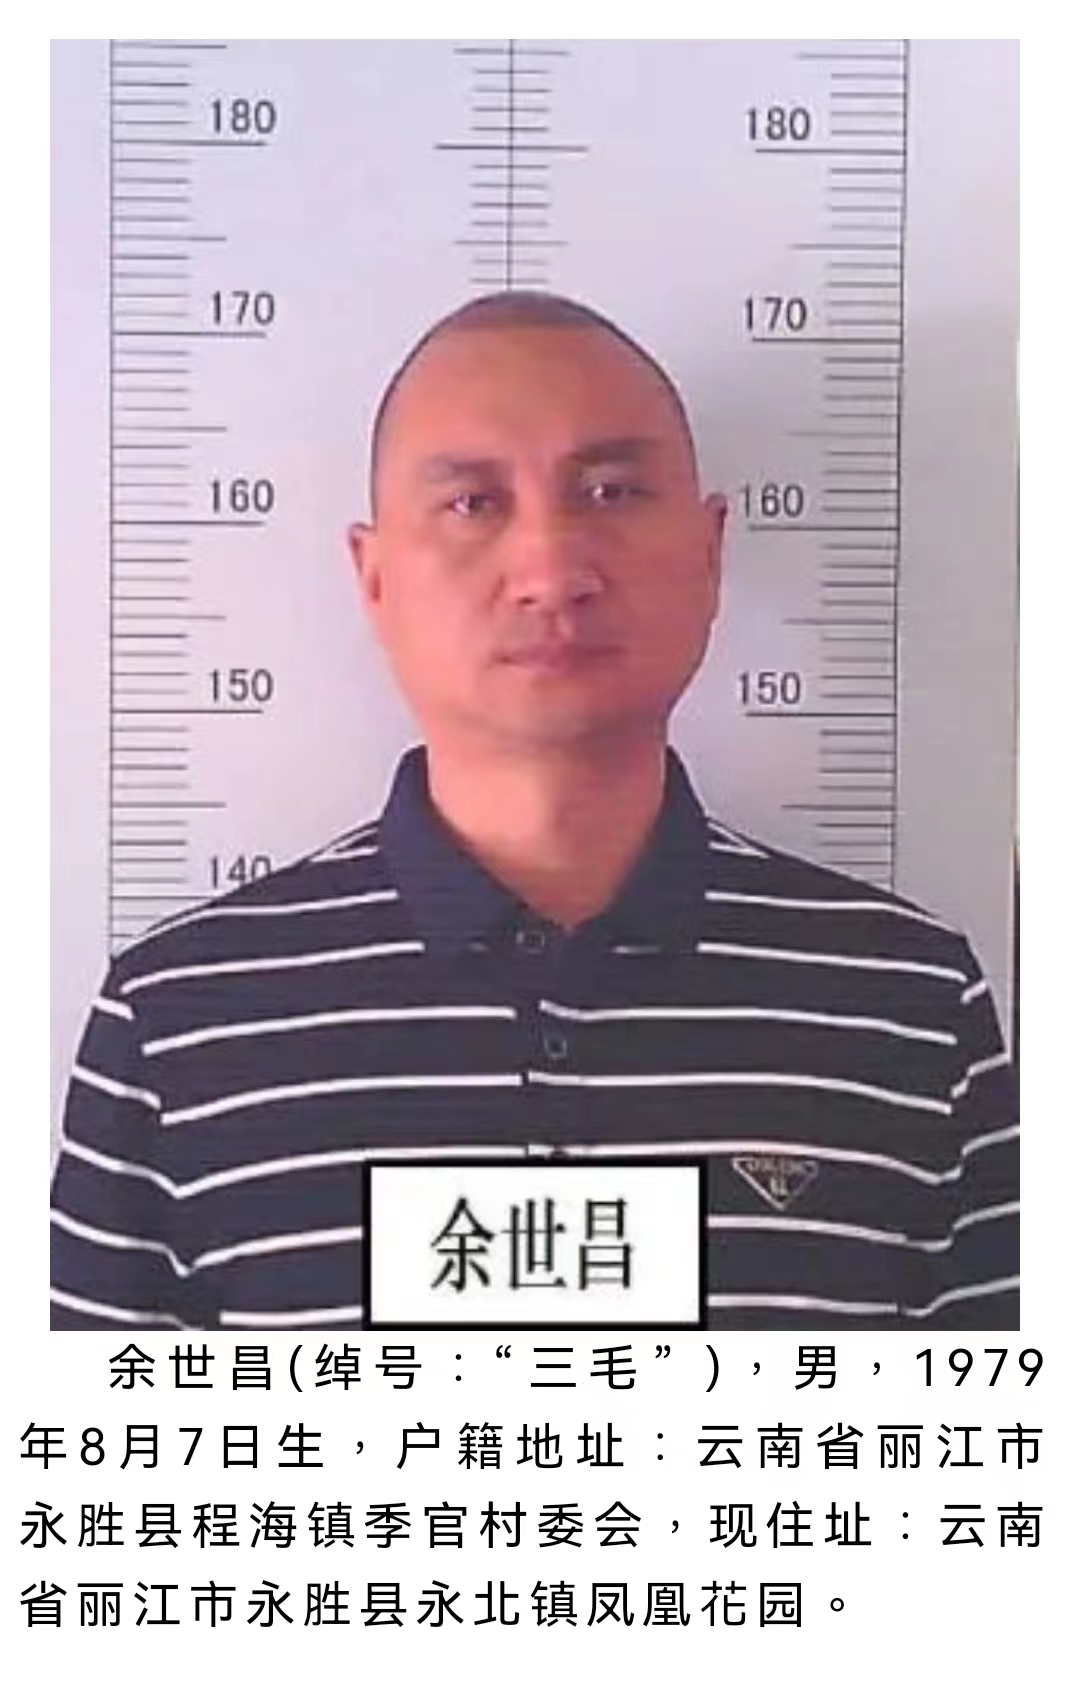 丽江警方公开征集该犯罪团伙犯罪线索 被欺负过的速来举报 (3).jpg